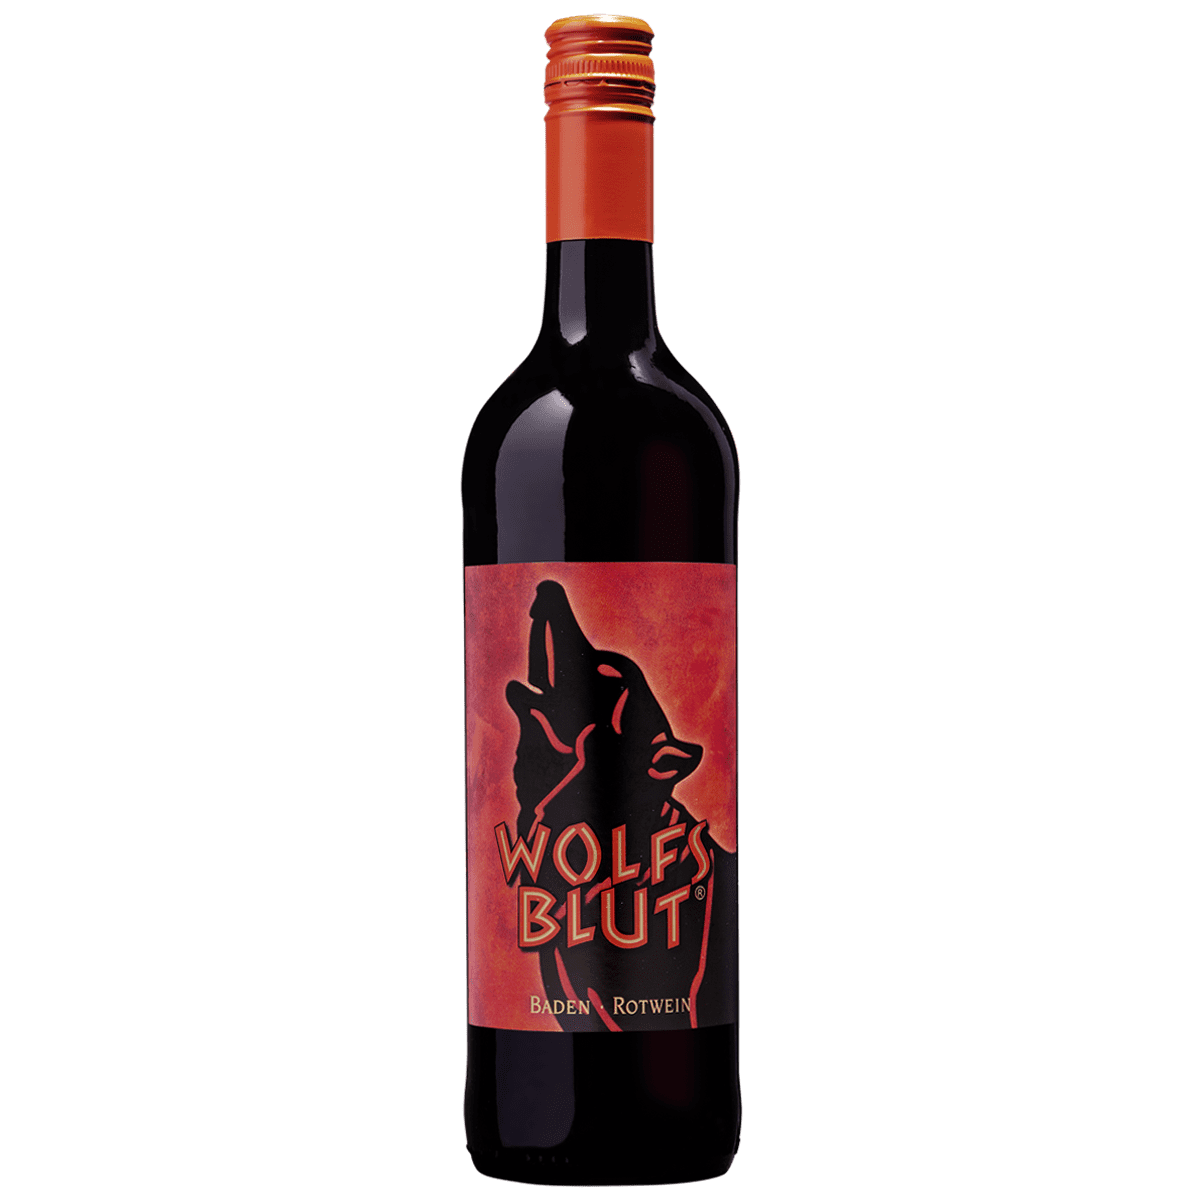 Rotwein-Cuvée "Wolfsblut" lieblich